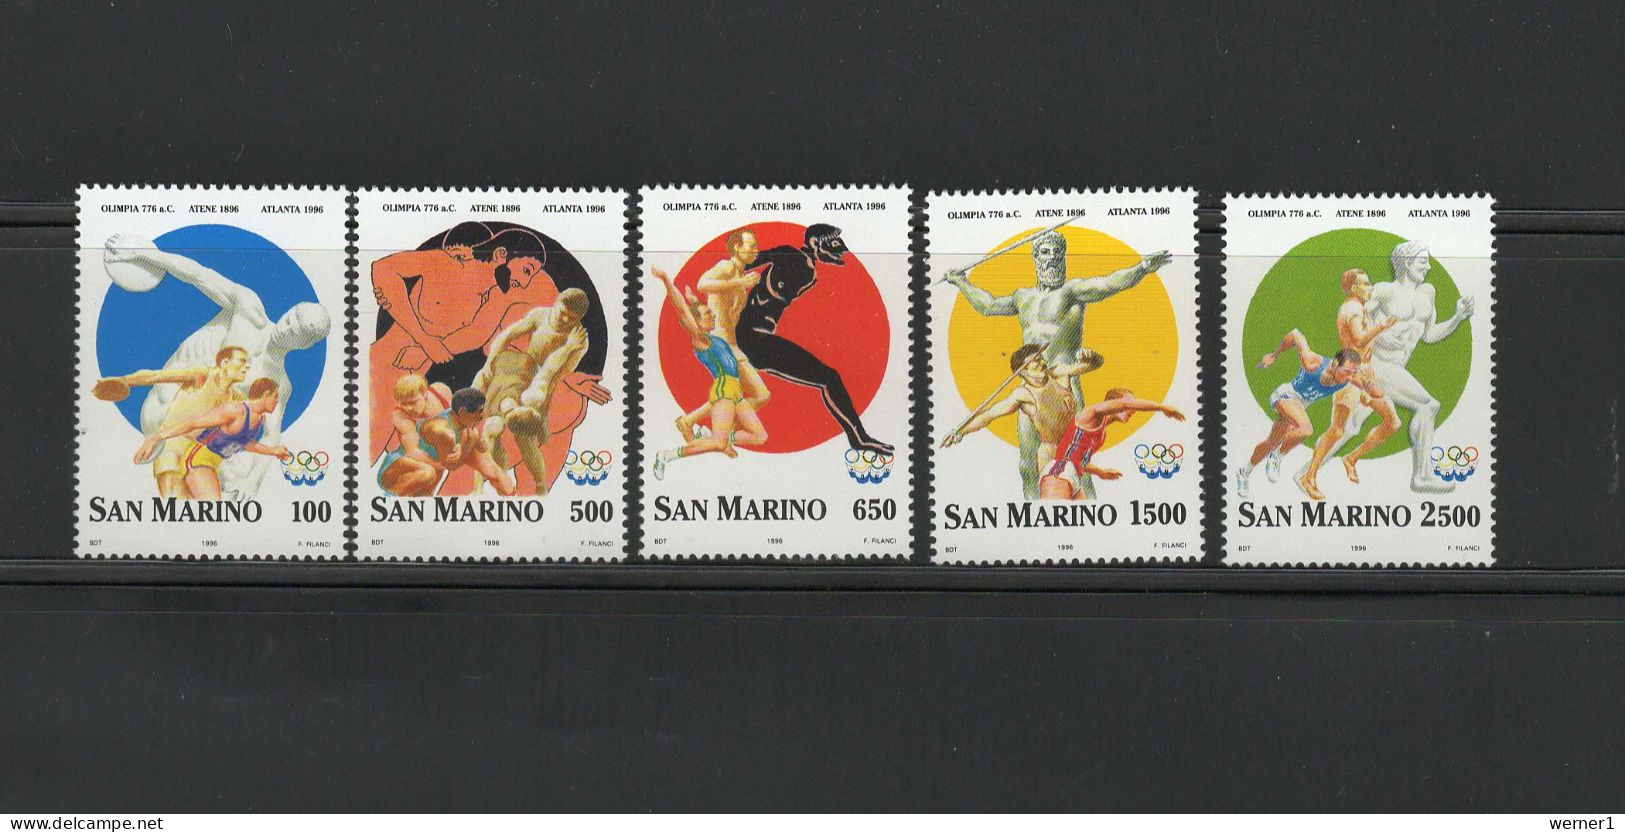 San Marino 1996 Olympic Games Atlanta, Set Of 5 MNH - Summer 1996: Atlanta